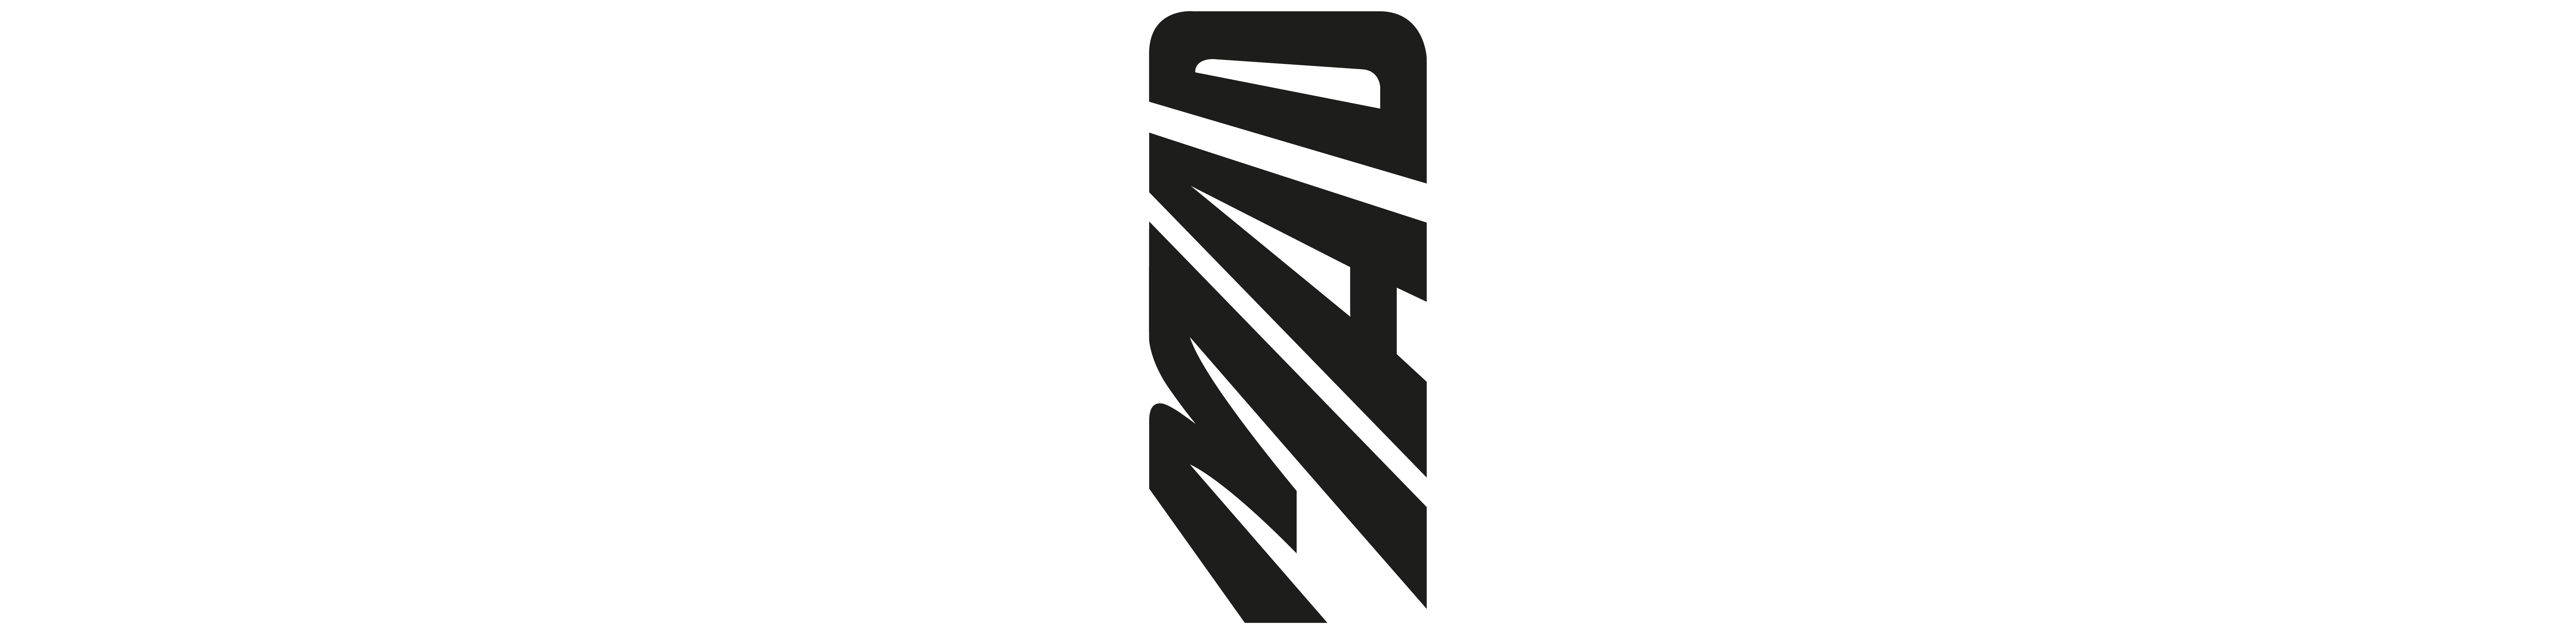 Logo MAD